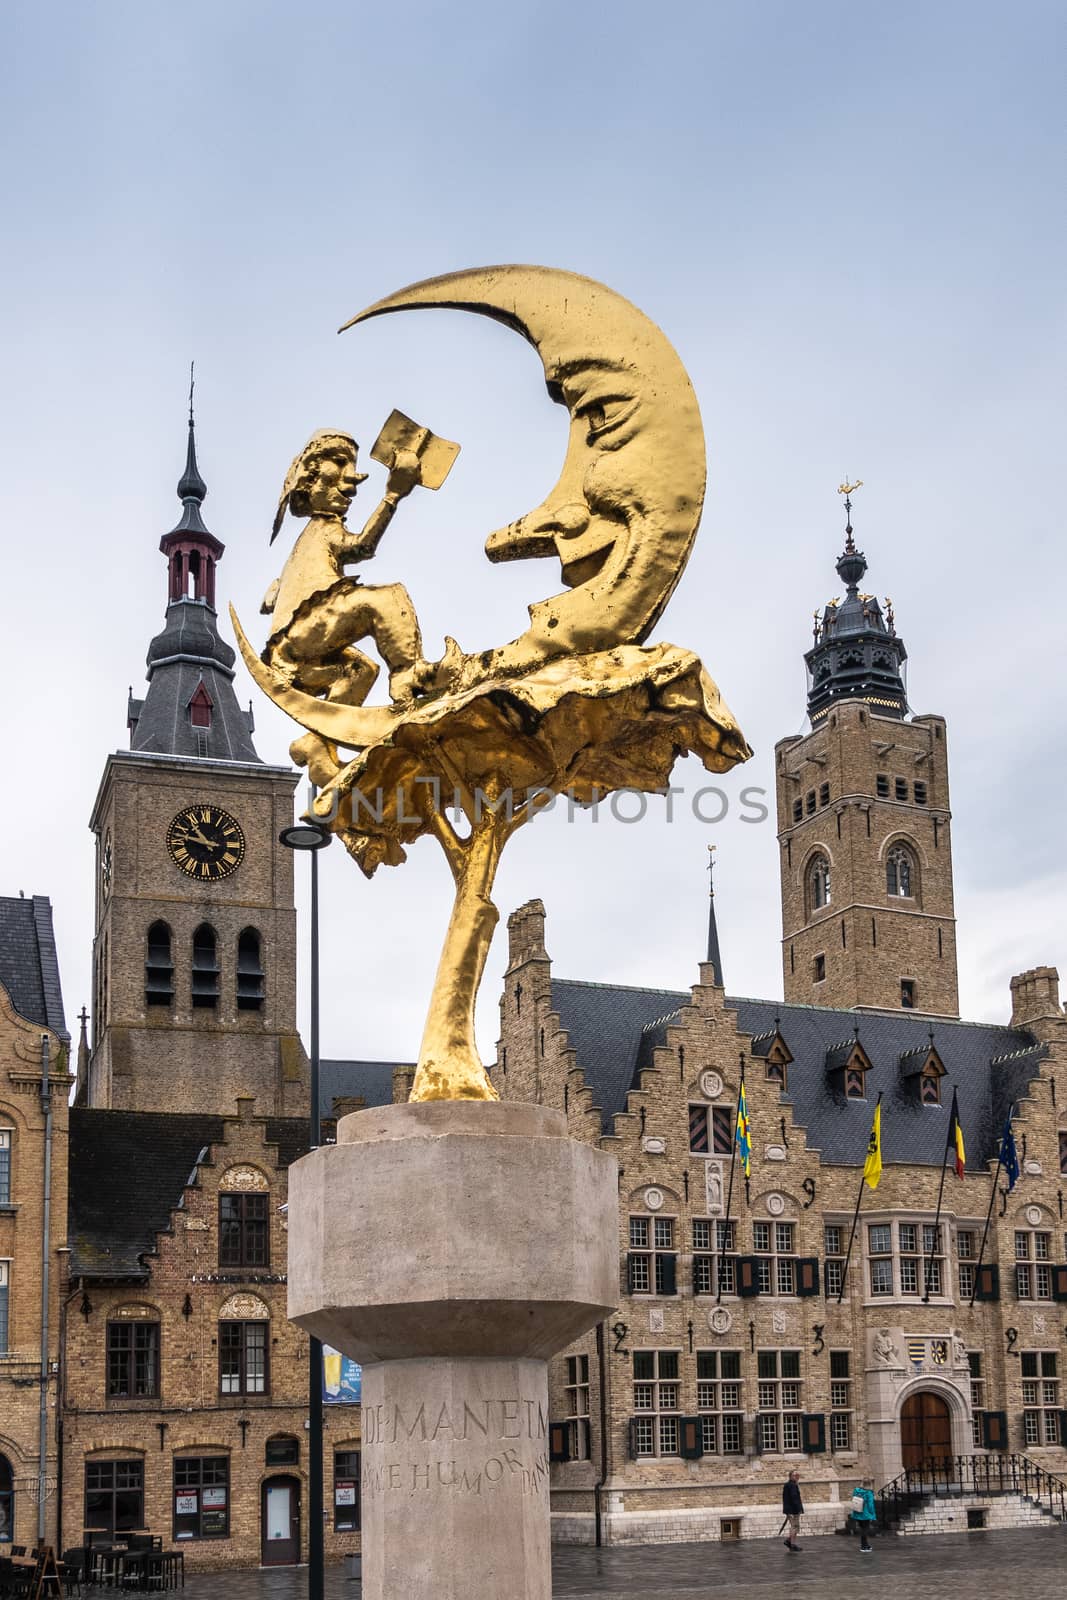 Manneke Uit De Mane statue in Diksmuide, Flanders, Belgium. by Claudine